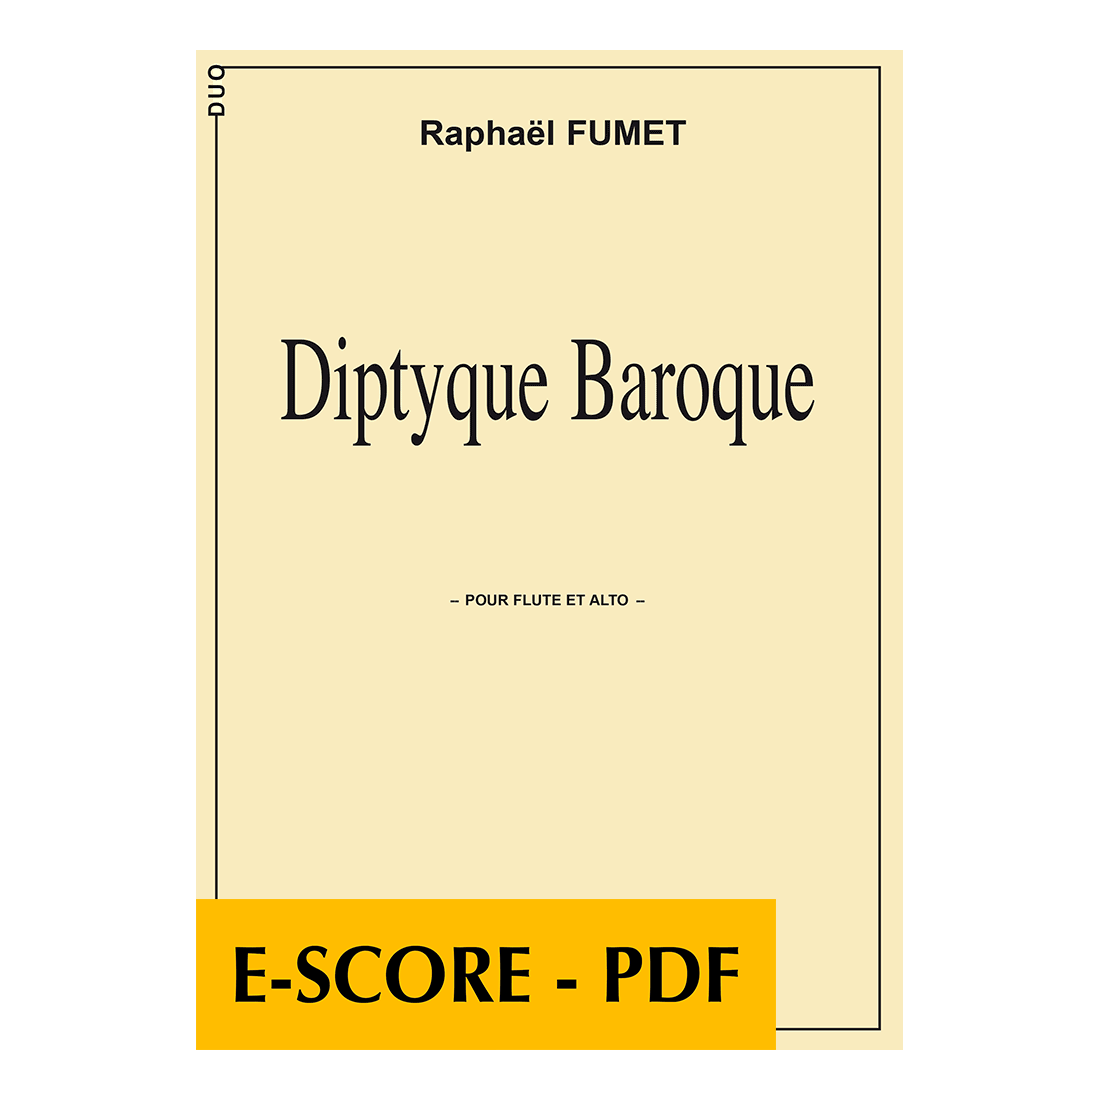 Diptyque baroque pour flûte et alto - E-score PDF